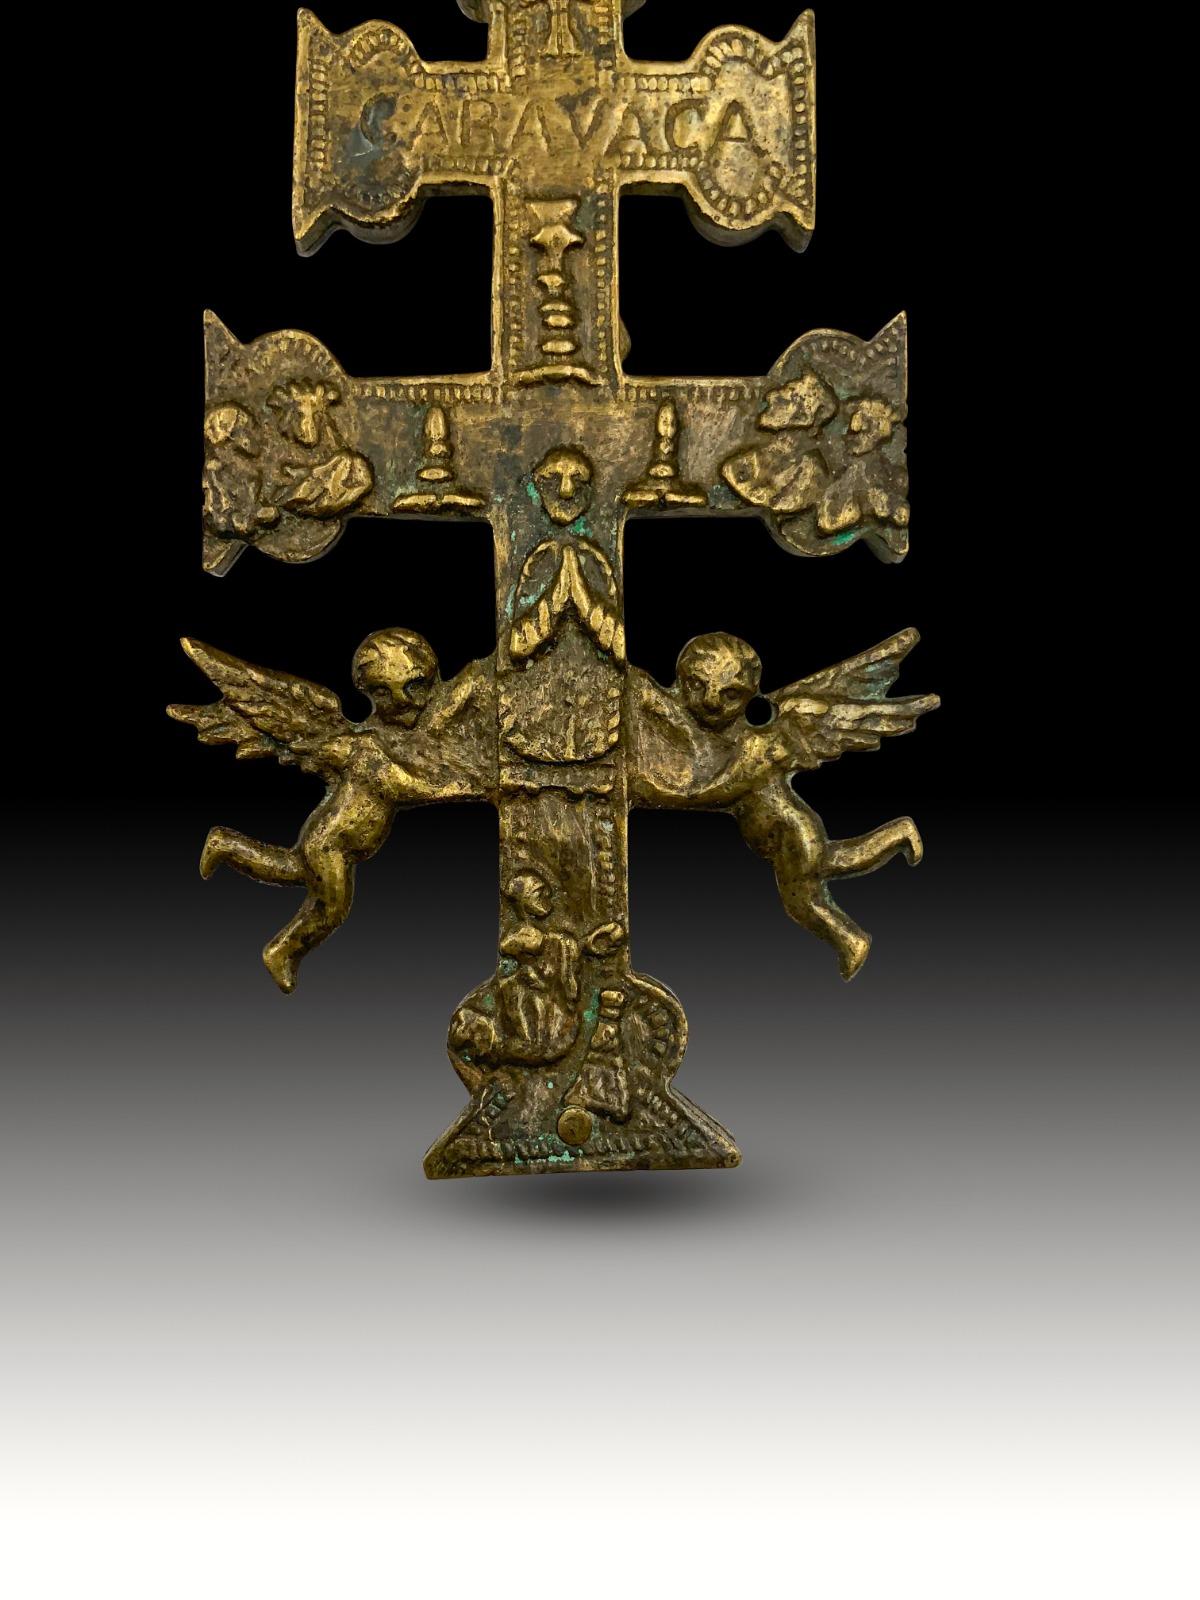 Kreuz von Caravaca xvii Jahrhundert
Sehr schönes Kreuz von Caravaca aus Bronze. 17. Jahrhundert. Abmessungen: 12 x 6cm
Guter Zustand.